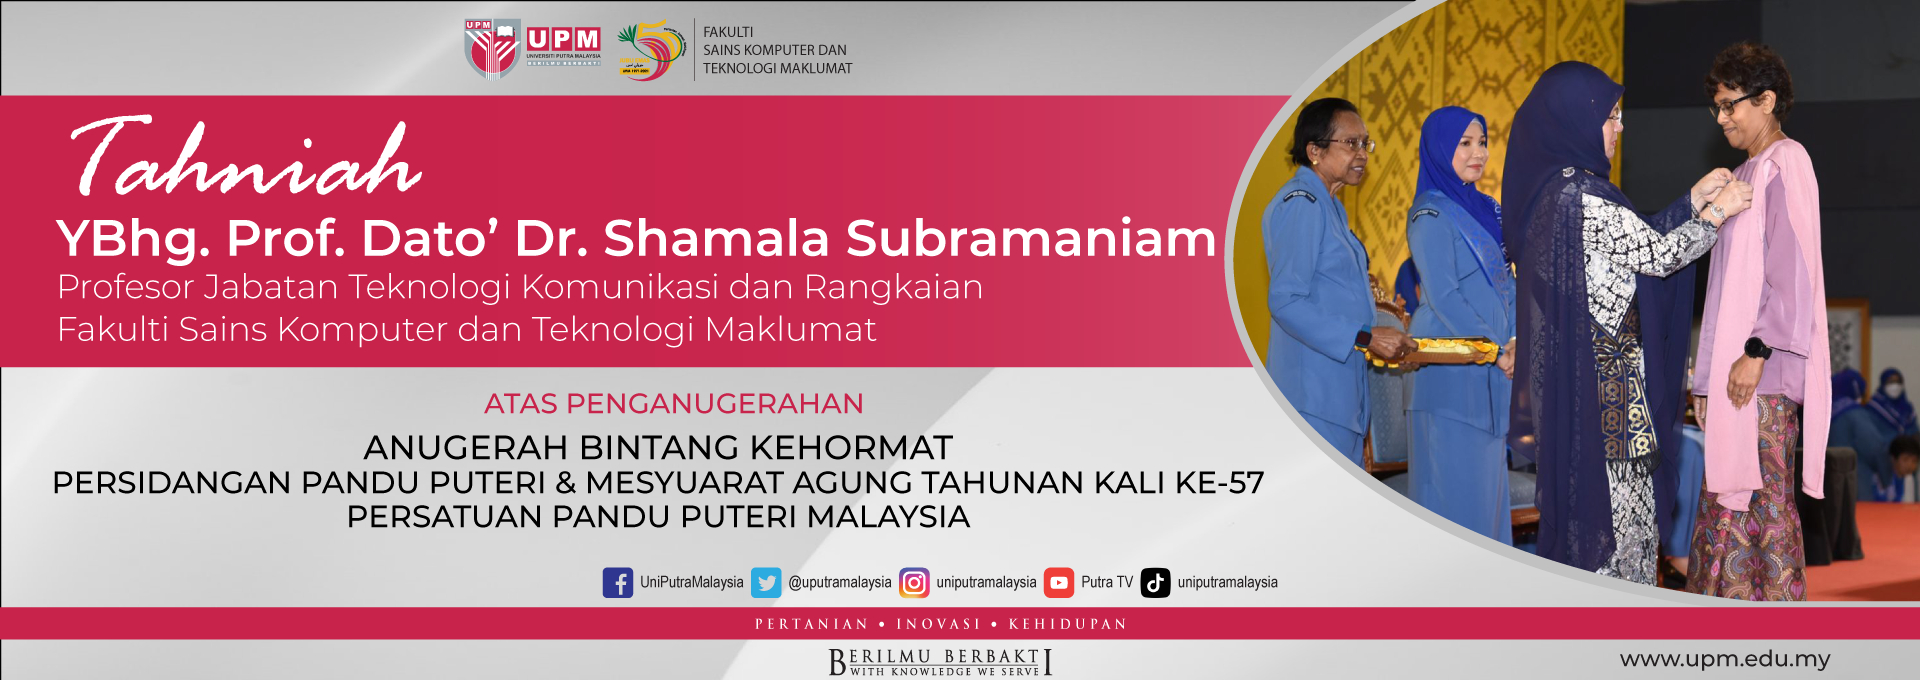 Ybhg. Prof. Dato' Dr. Shamala